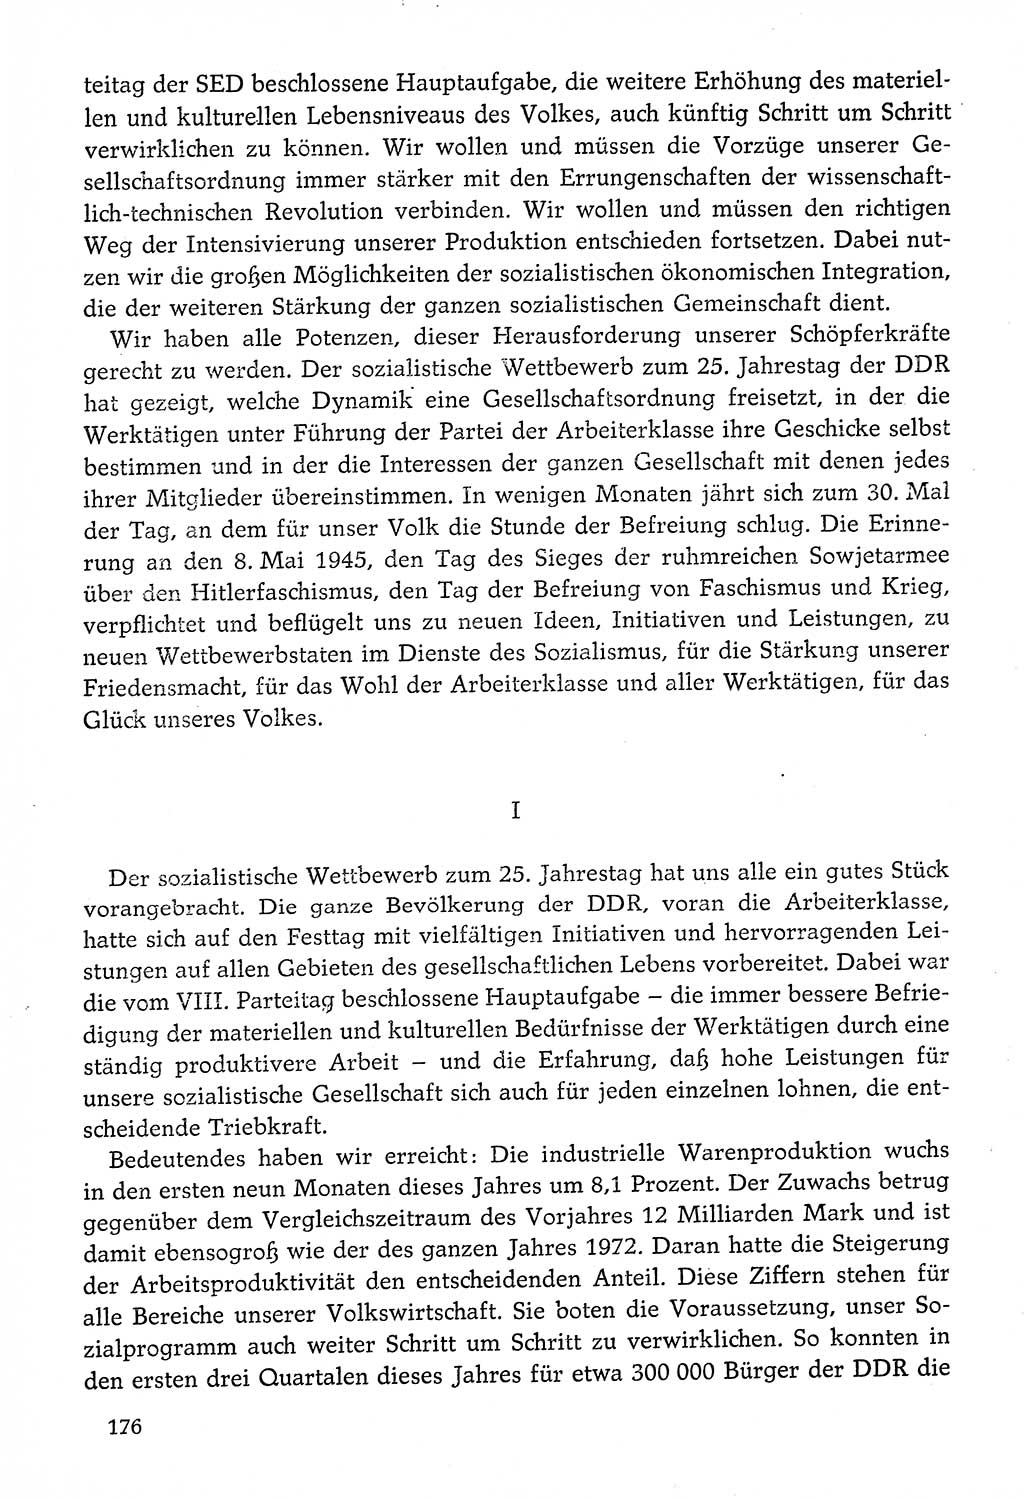 Dokumente der Sozialistischen Einheitspartei Deutschlands (SED) [Deutsche Demokratische Republik (DDR)] 1974-1975, Seite 176 (Dok. SED DDR 1978, Bd. ⅩⅤ, S. 176)